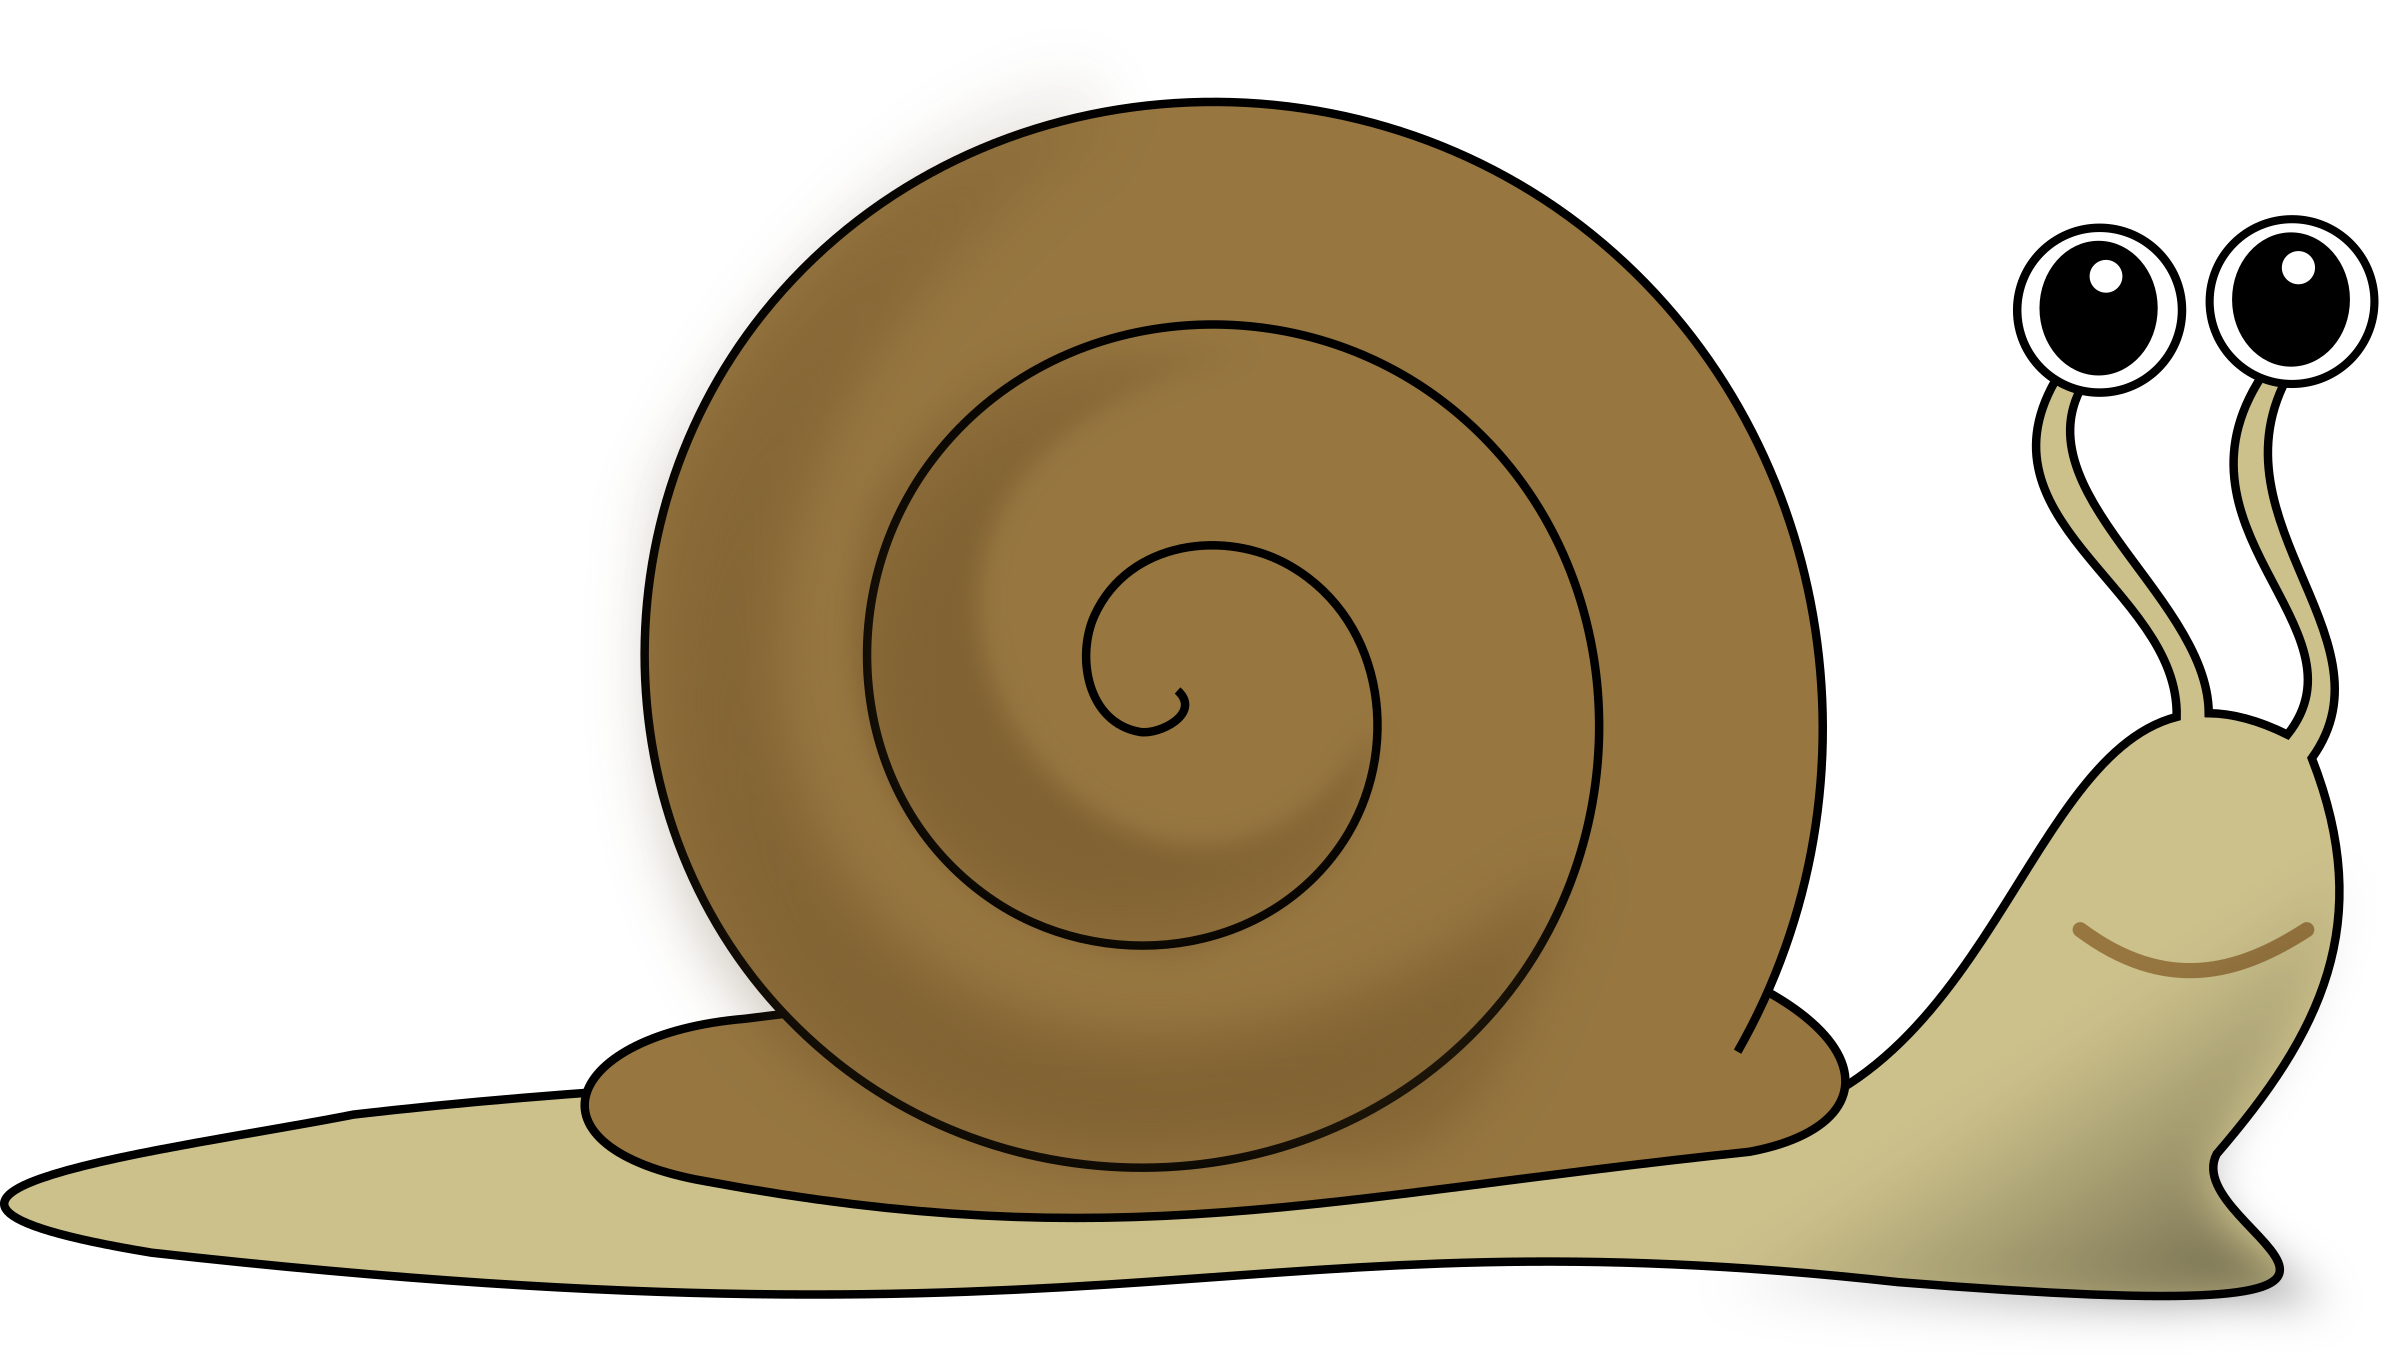 Clip art of snails dromiag top